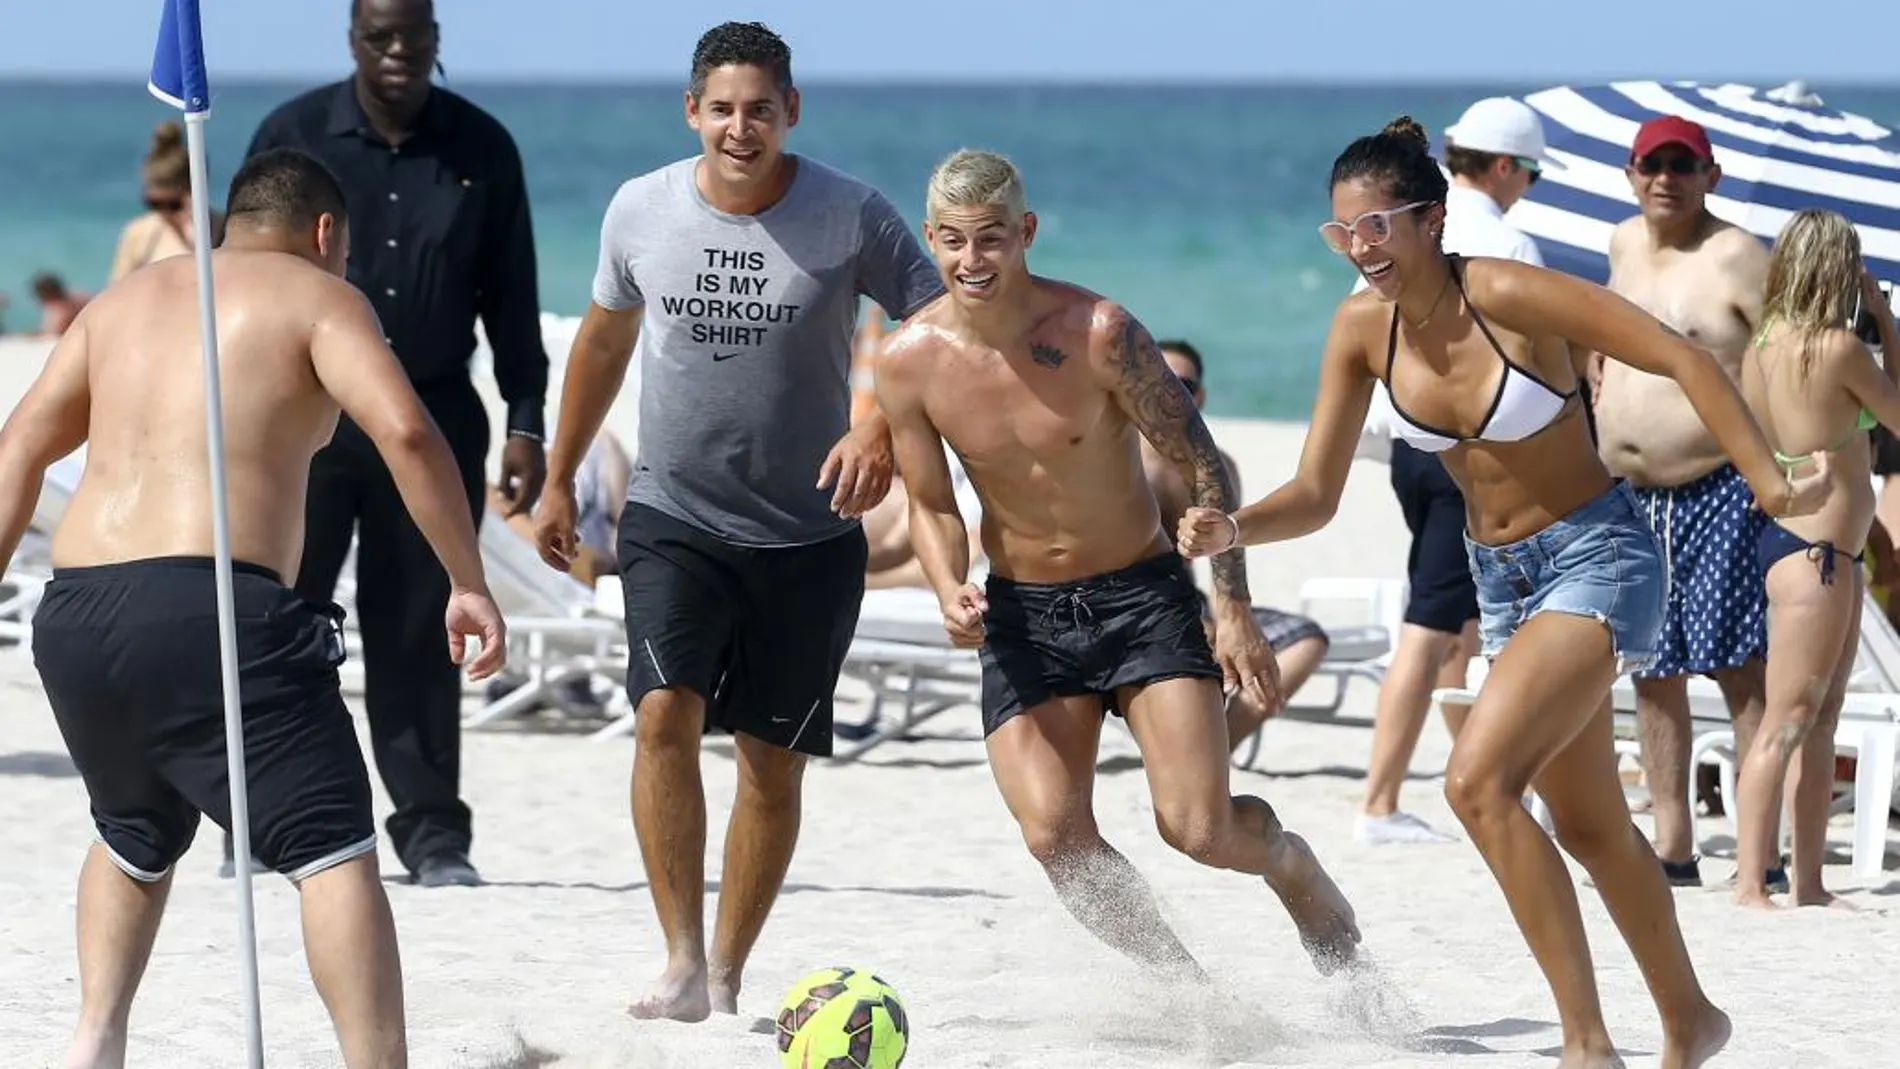 James Rodriguez juega al fútbol con unos fans